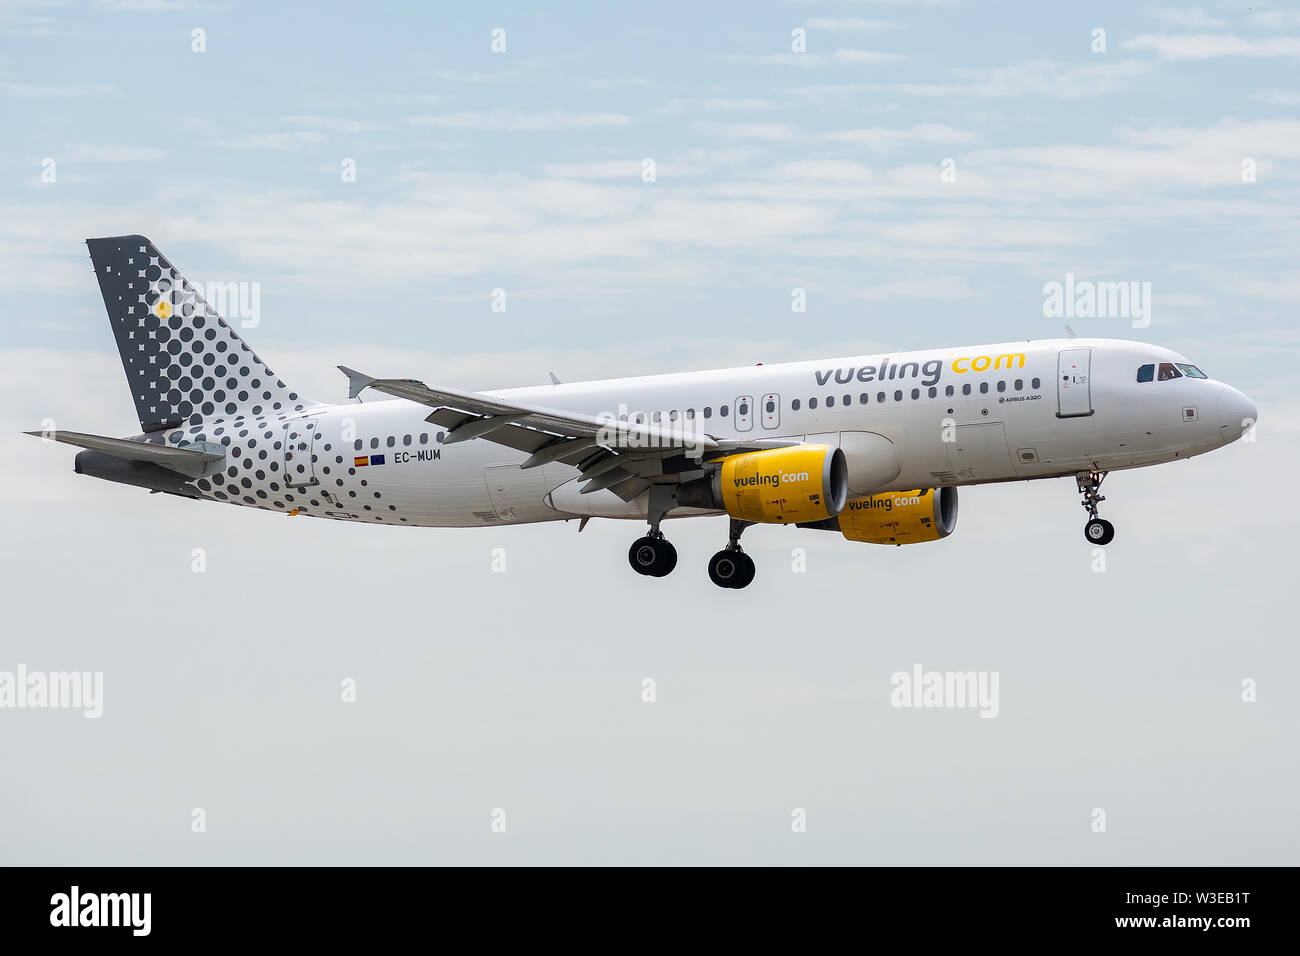 EC-MOM, le 11 juillet 2019, l'Airbus A320-214-4101 atterrissage sur les pistes d'aéroport Paris Roissy Charles de Gaulle à la fin de Vol Vueling vy8202 à partir de Banque D'Images